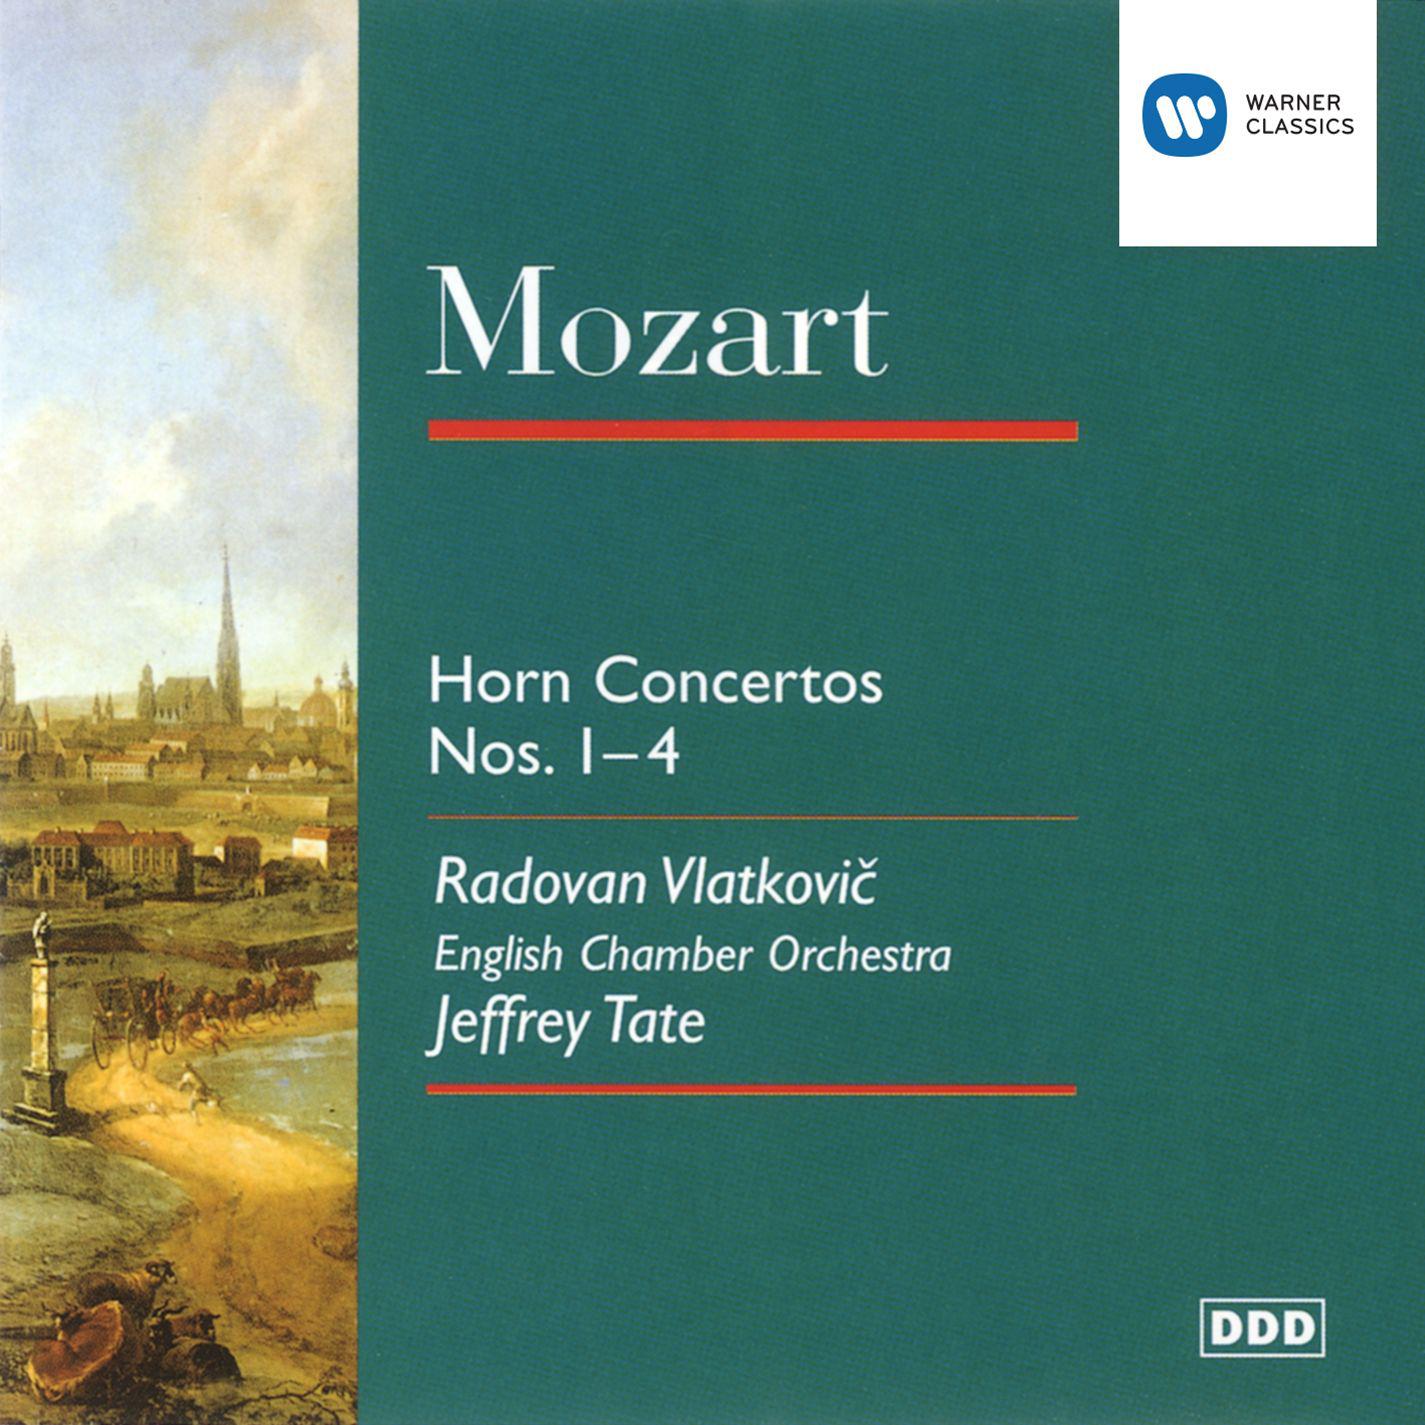 Horn Concerto No. 2 in E flat K417: I. Allegro maestoso